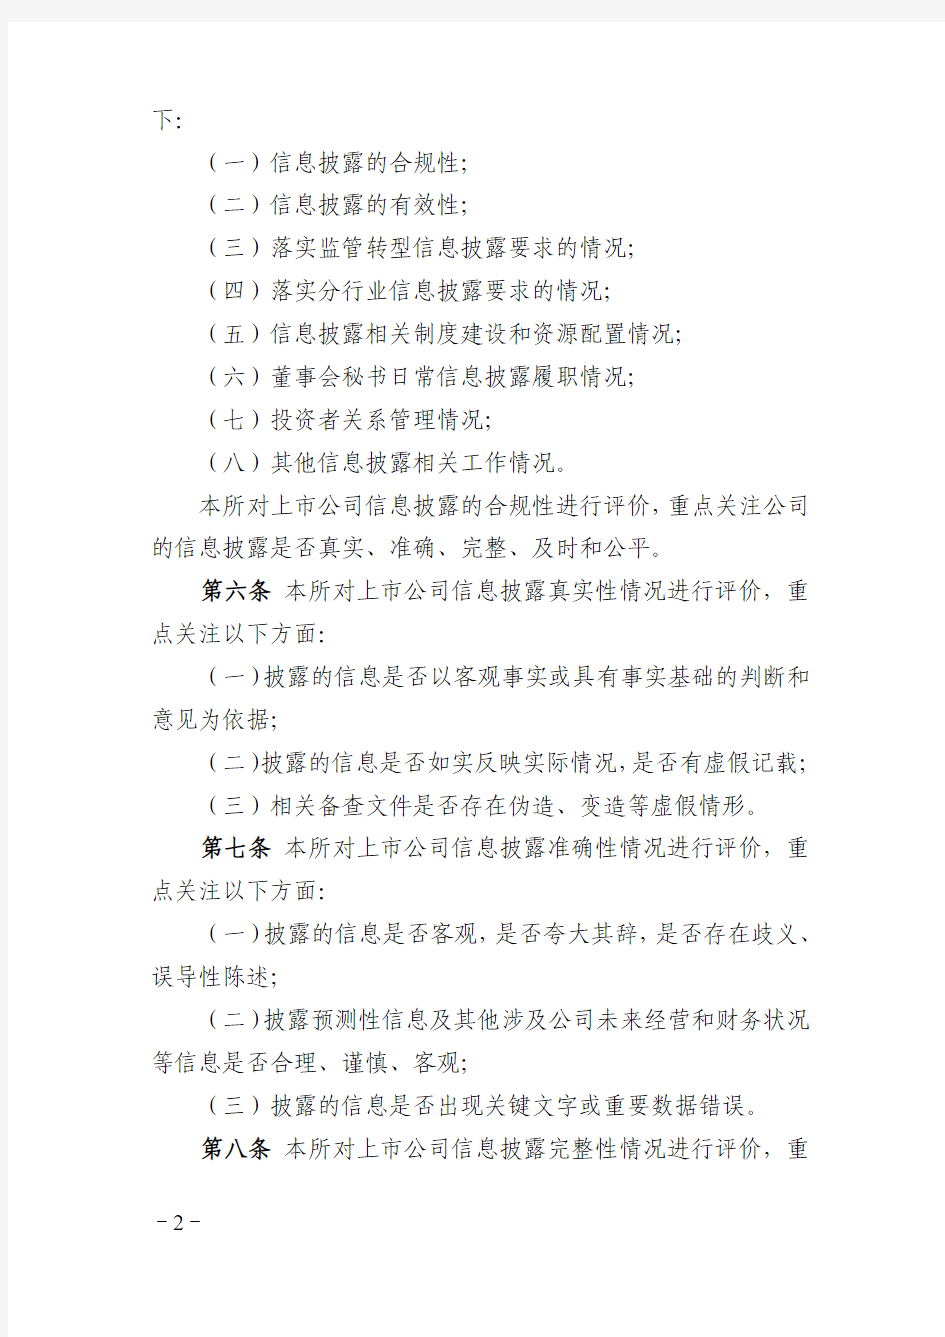 上海证券交易所上市公司信息披露工作评价办法(2015年修订)